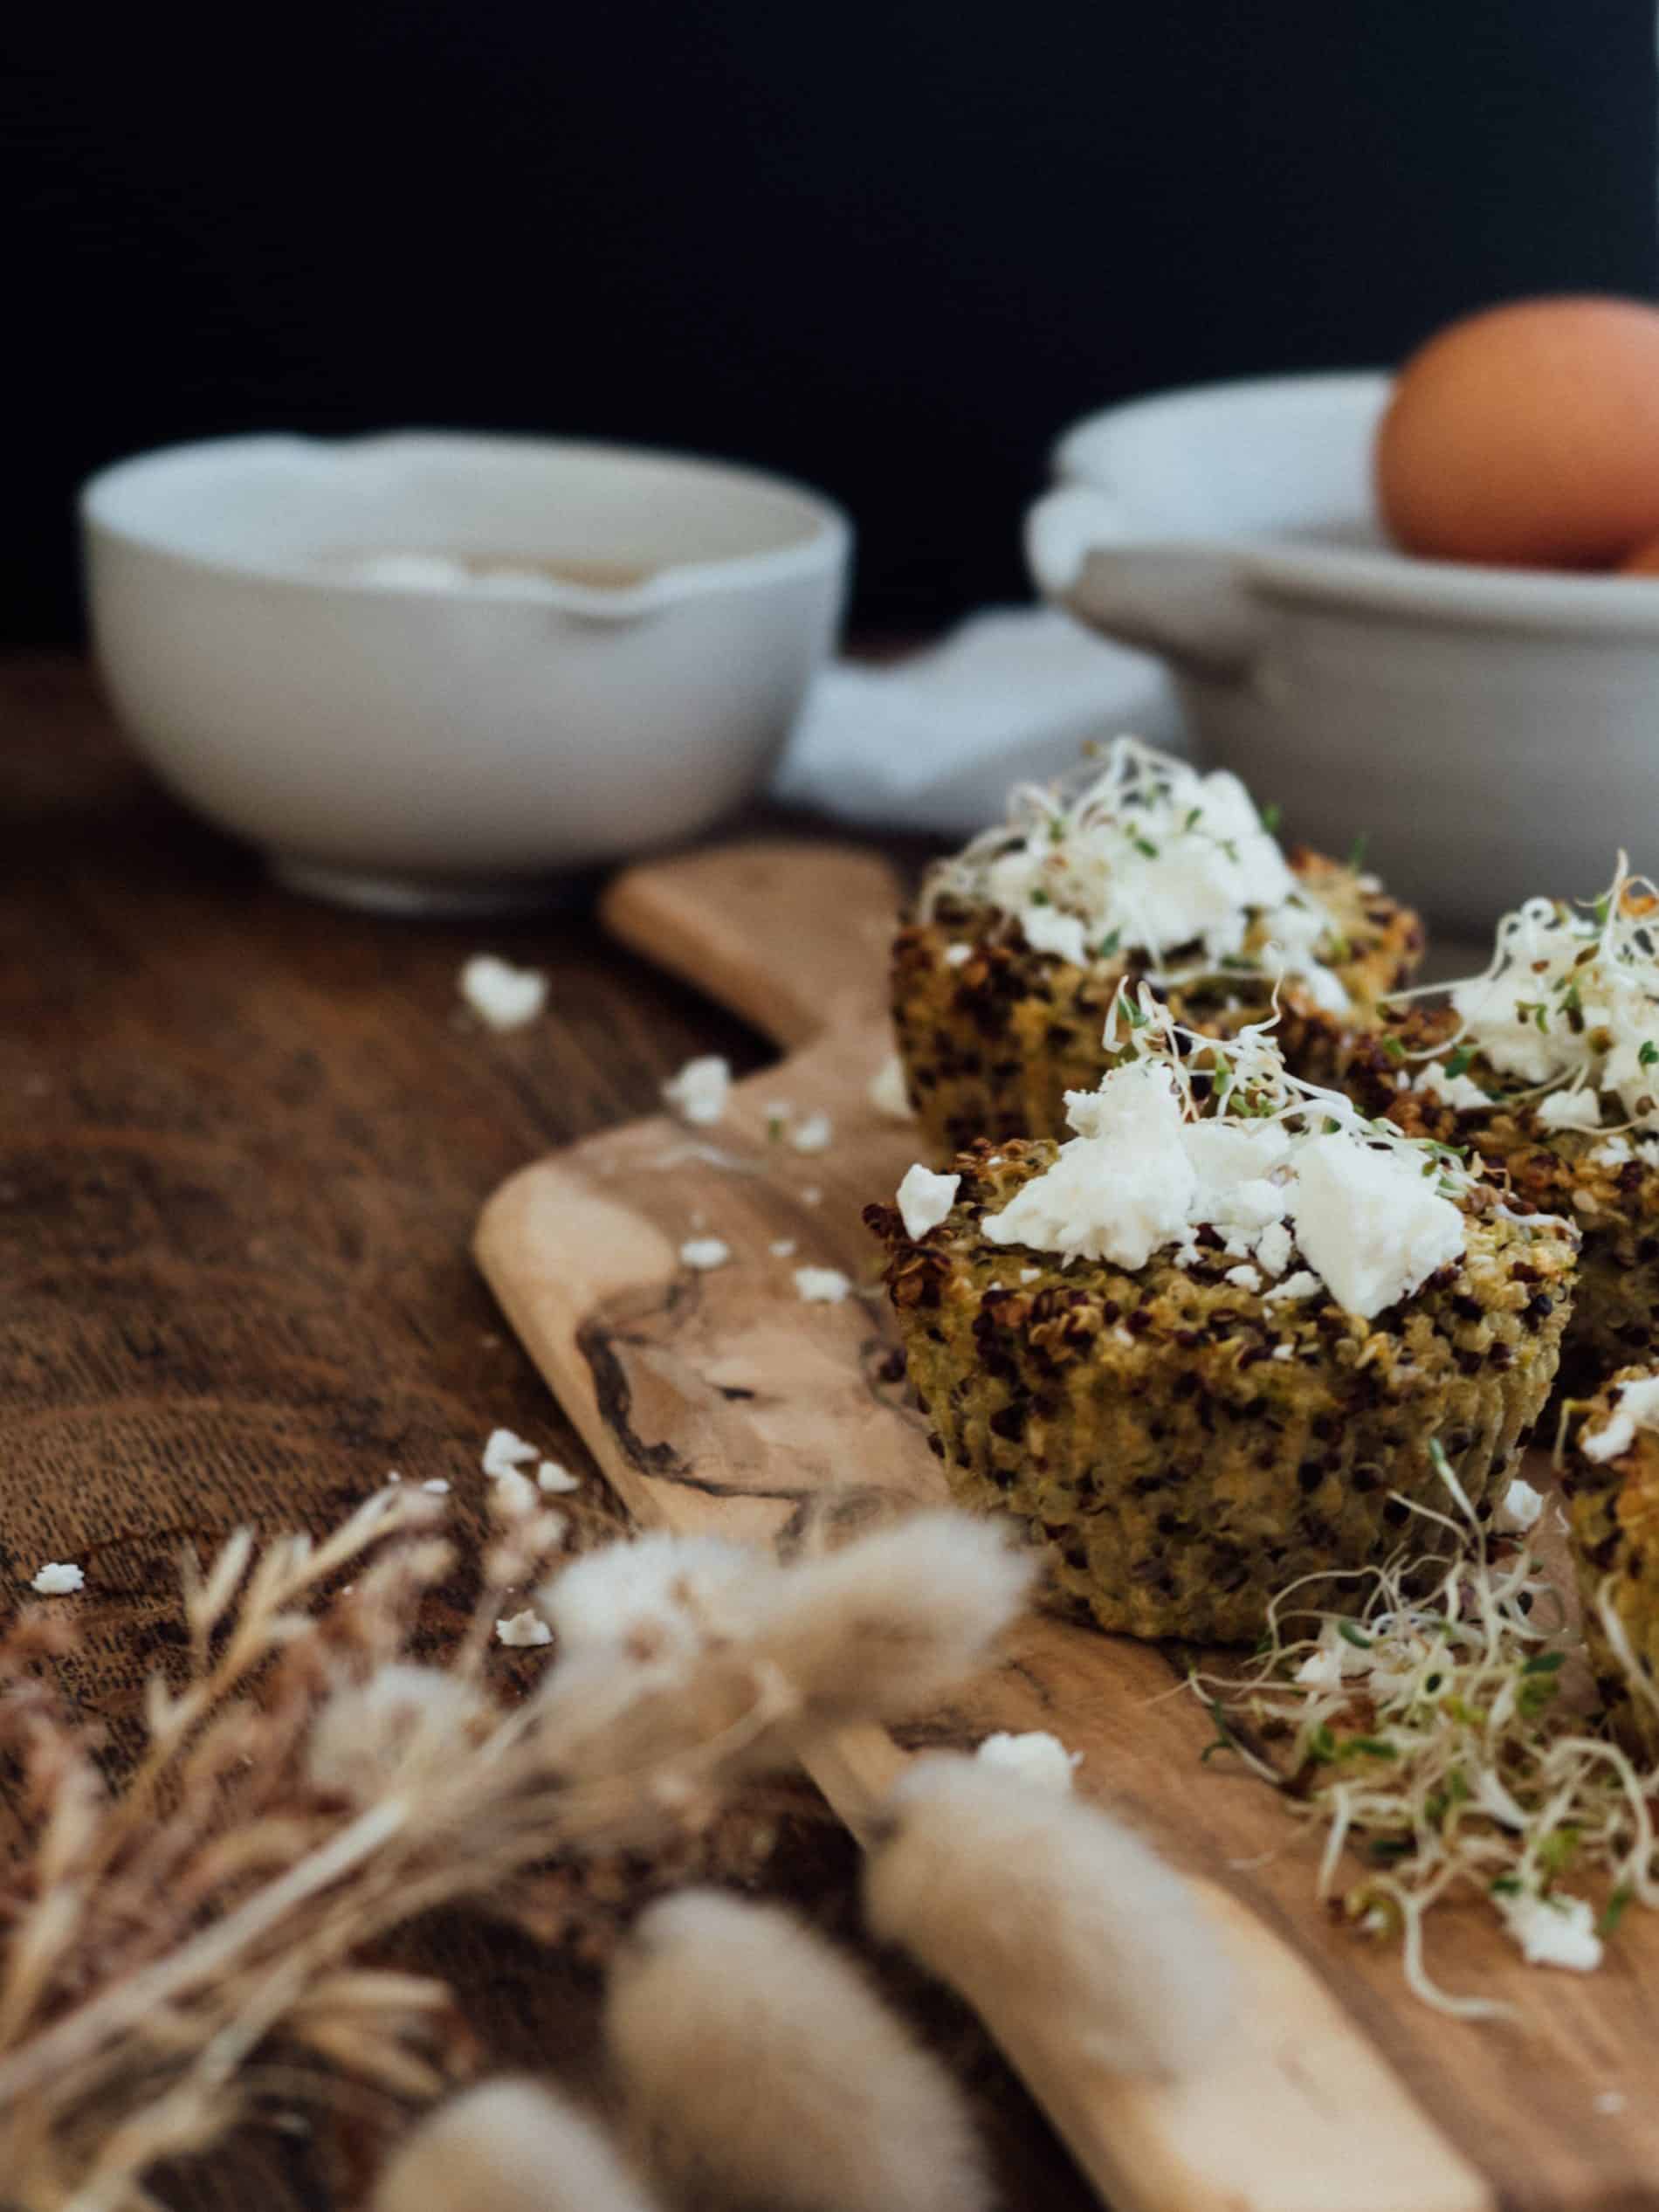 muffin quinoa courgette feta recette blog lili in wonderland